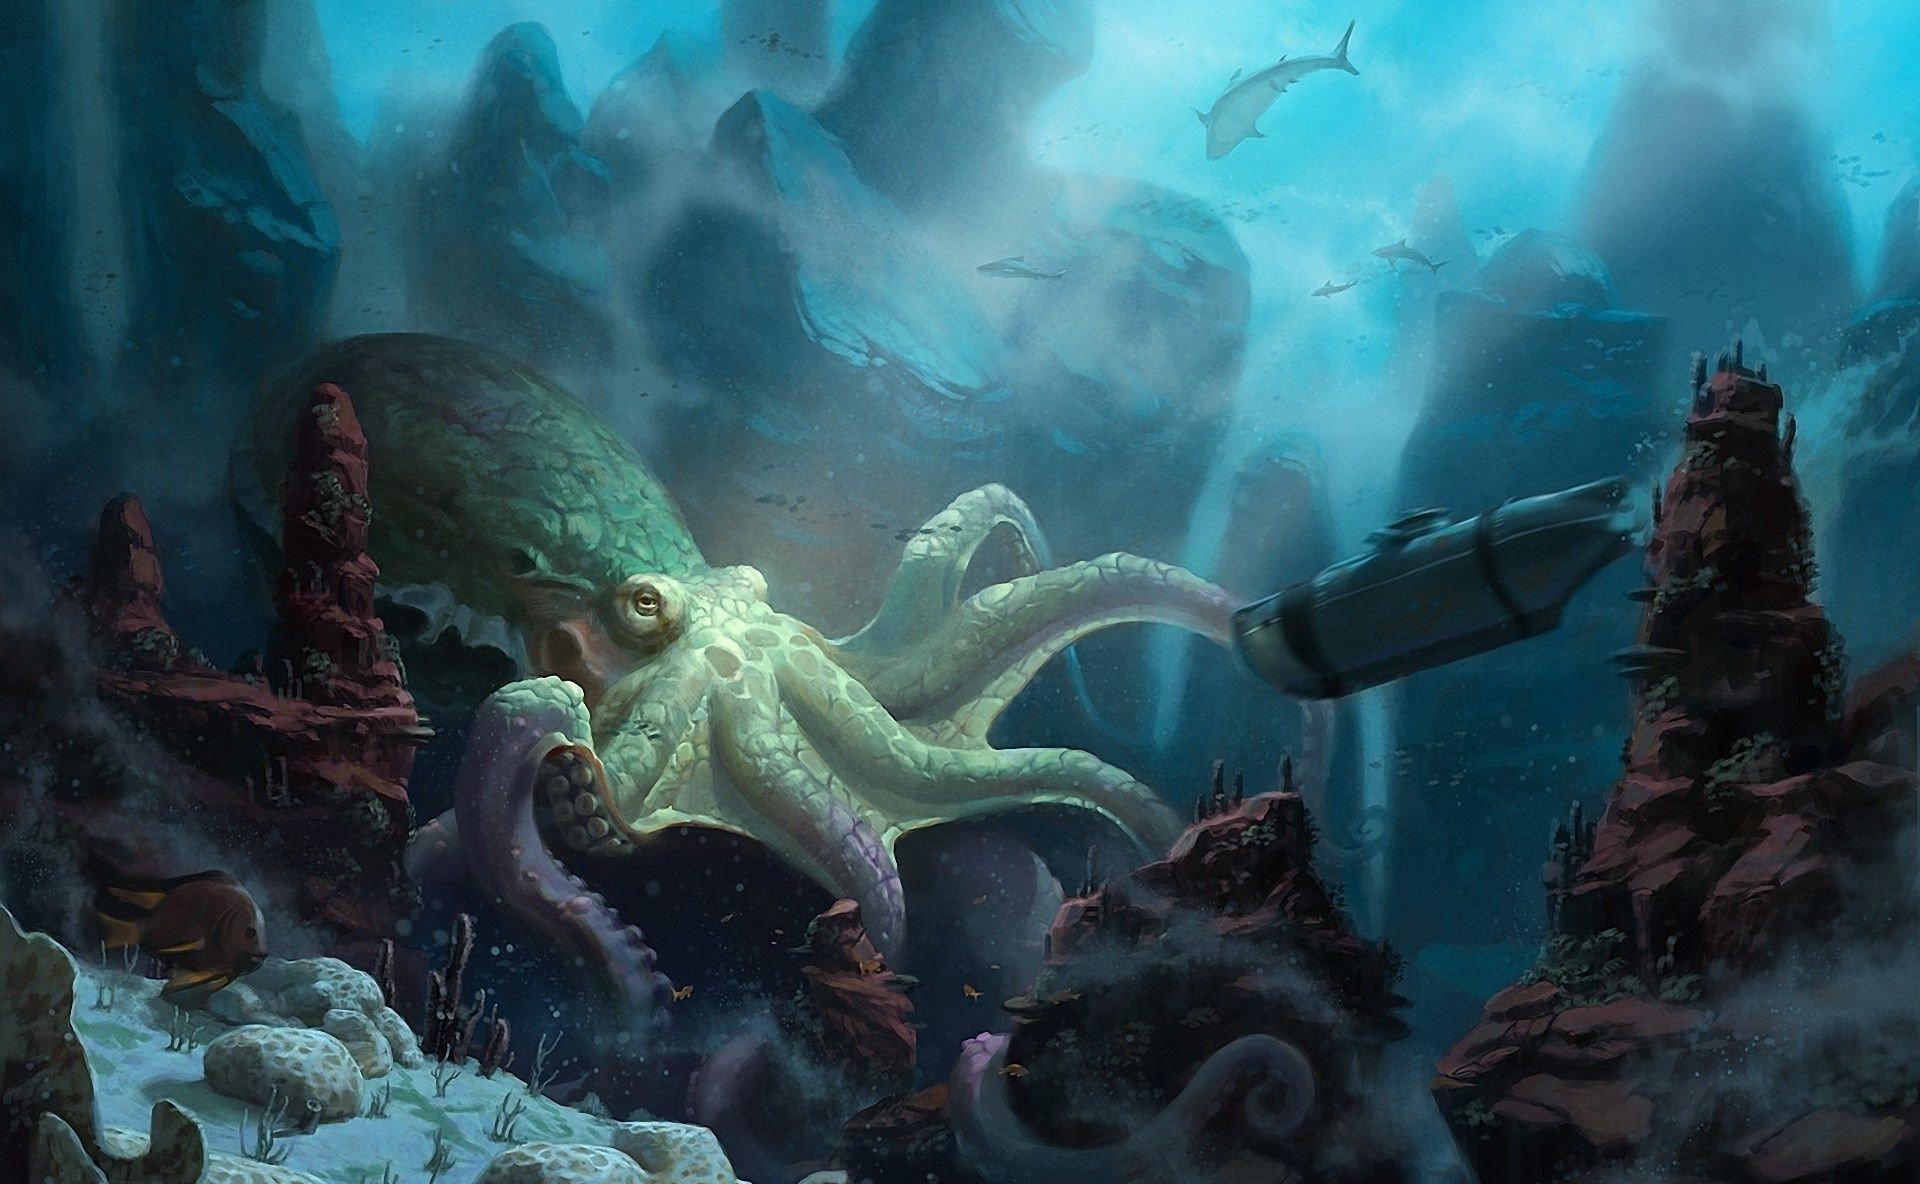 20000 Лье под водой. Конан Дойл про подводный мир. Картинки подводный мир фантастика. Игры вода монстру